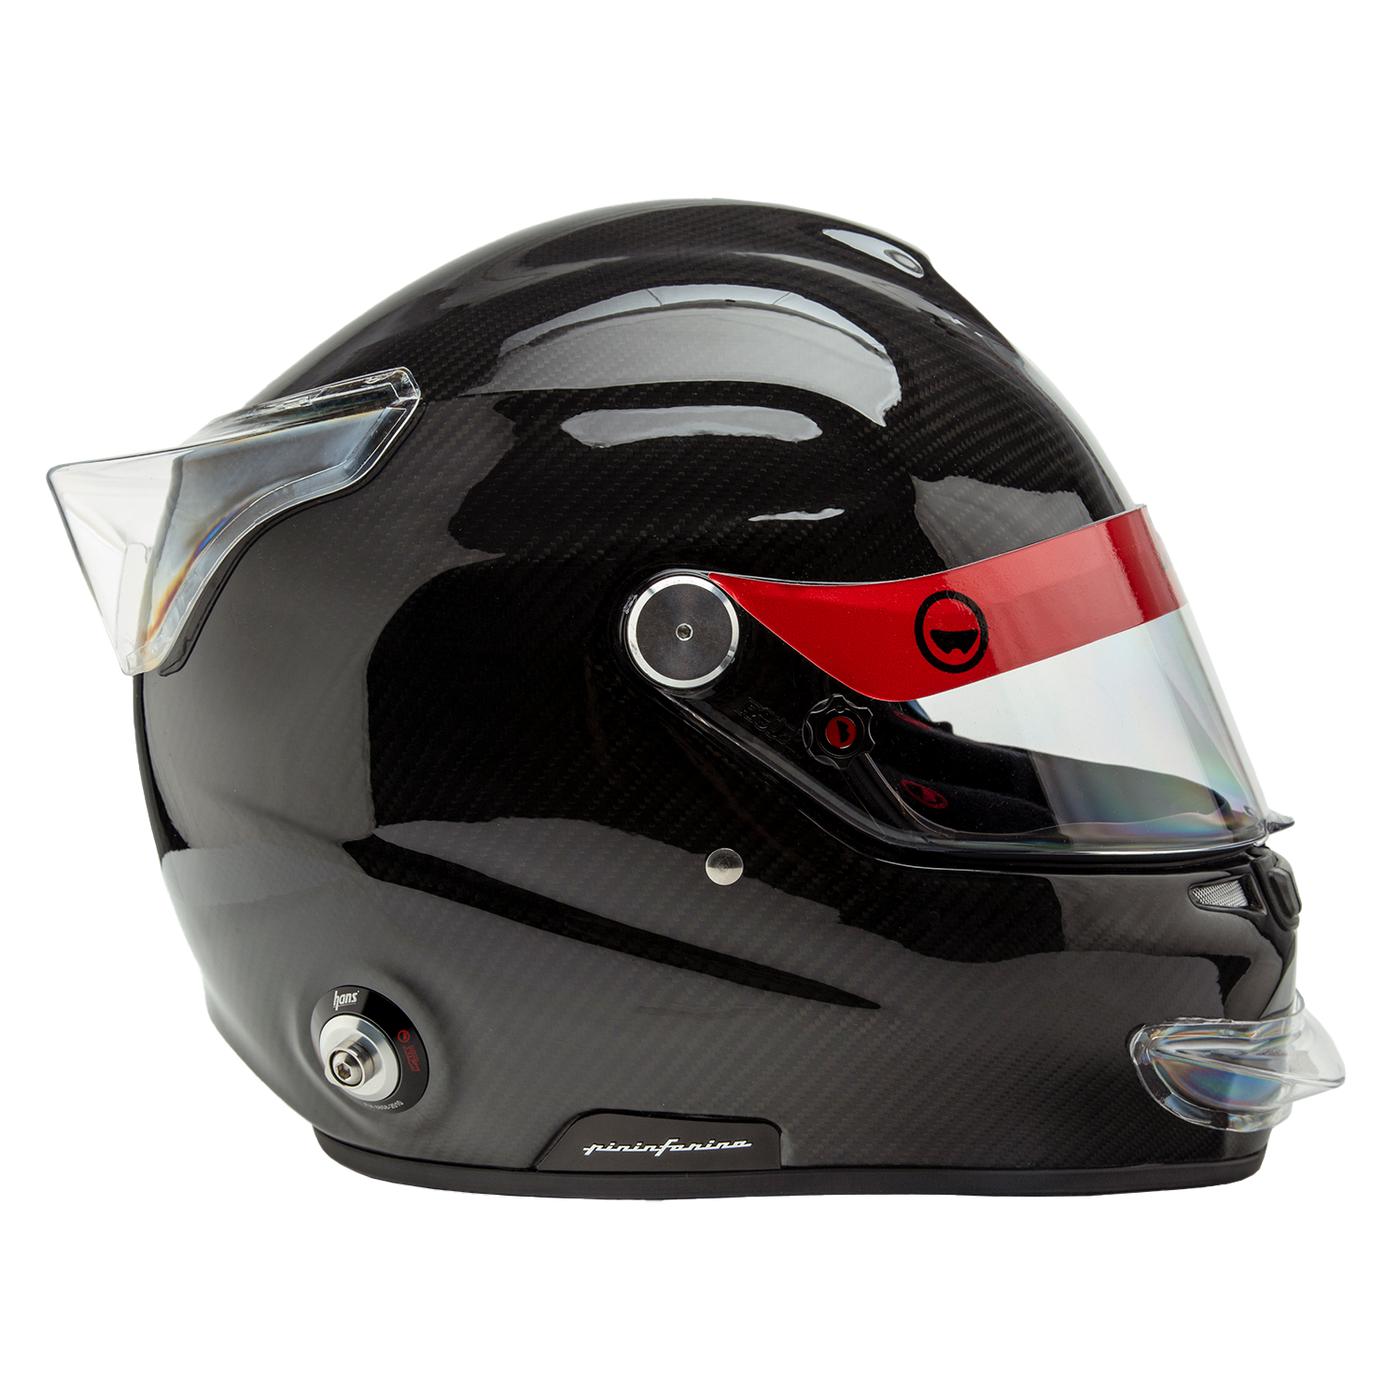 Helmet Spoiler Front/Rear